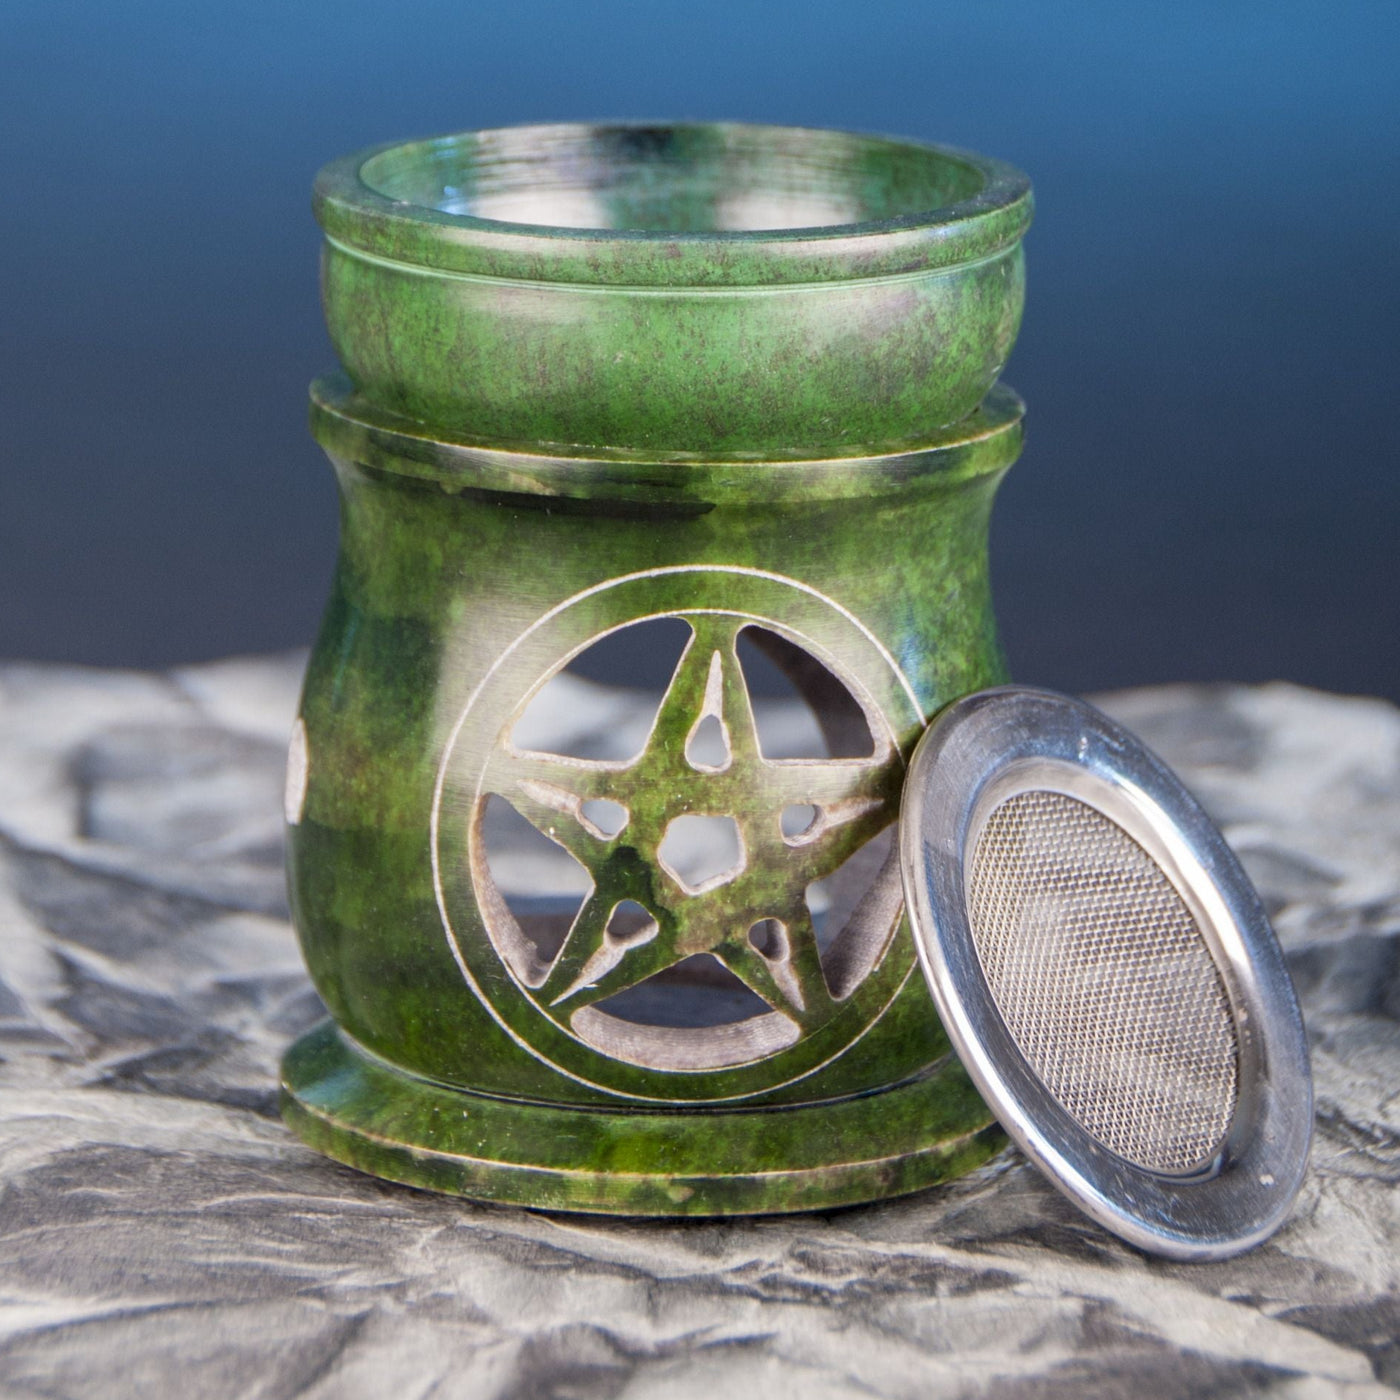 Aromalampe "Pentagramm" mit Sieb Speckstein grün, 10 cm hoch Berk